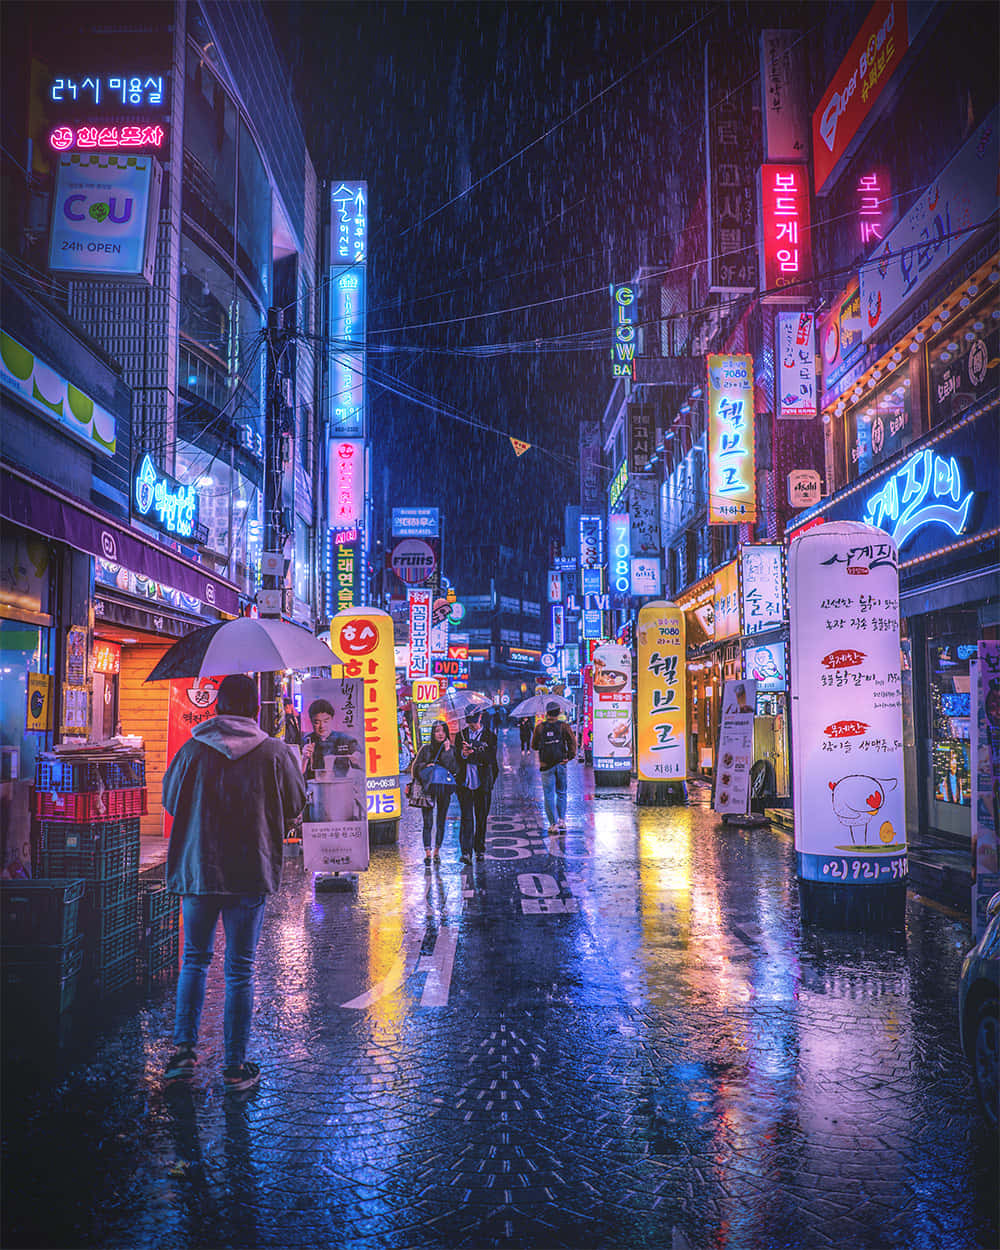 Rainy Nightin Neon Alley.jpg Wallpaper